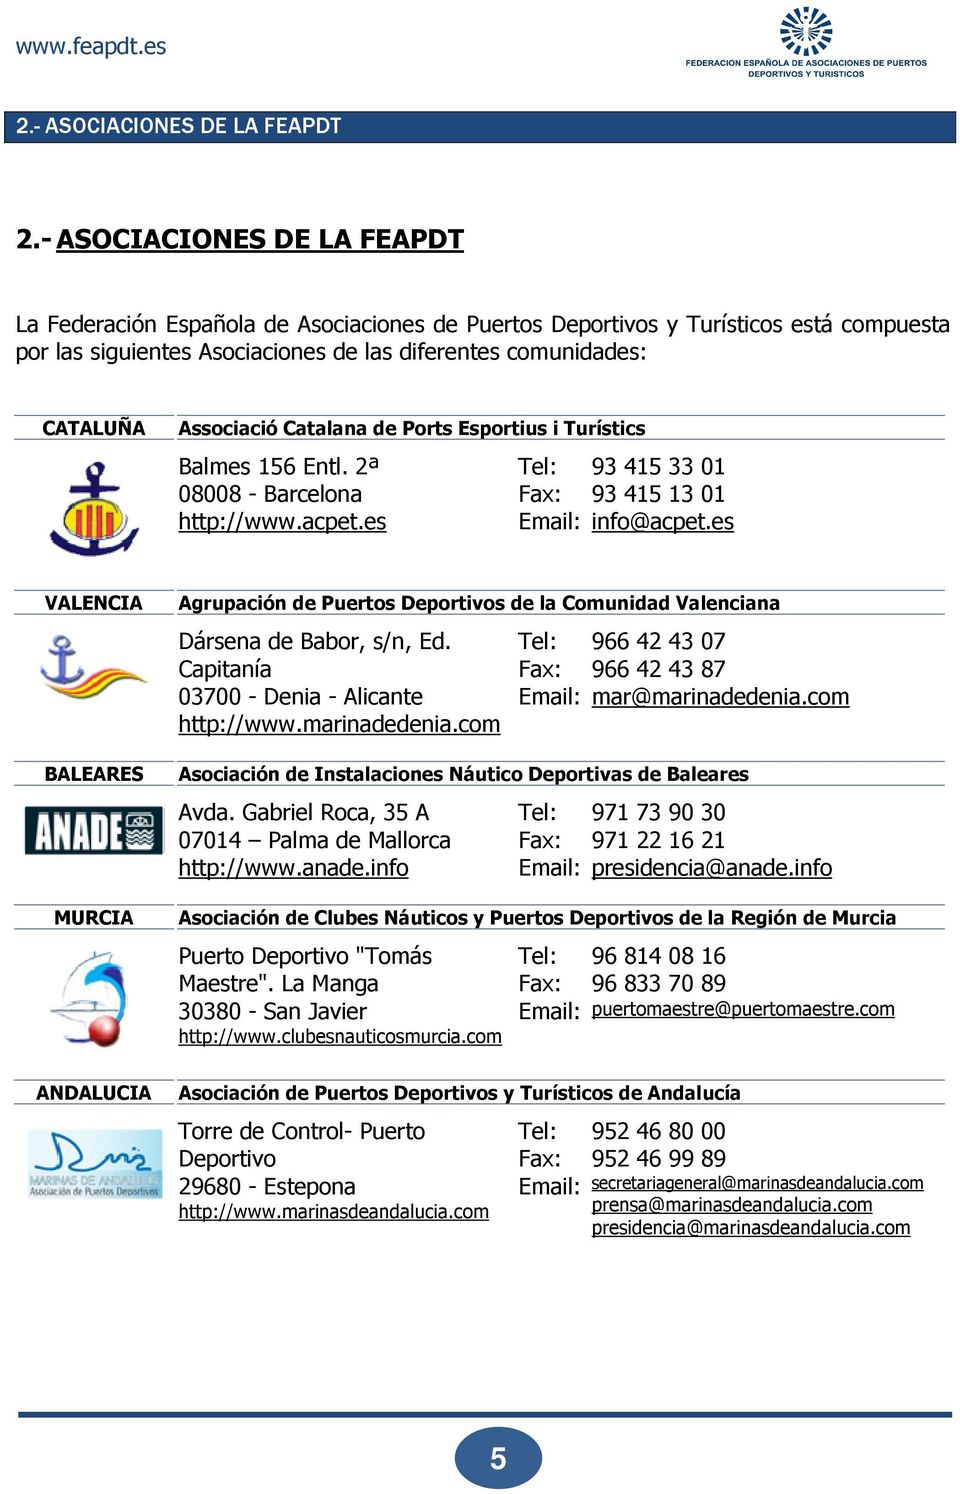 Catalana de Ports Esportius i Turístics Balmes 156 Entl. 2ª 08008 - Barcelona http://www.acpet.es Tel: Fax: Email: 93 415 33 01 93 415 13 01 info@acpet.